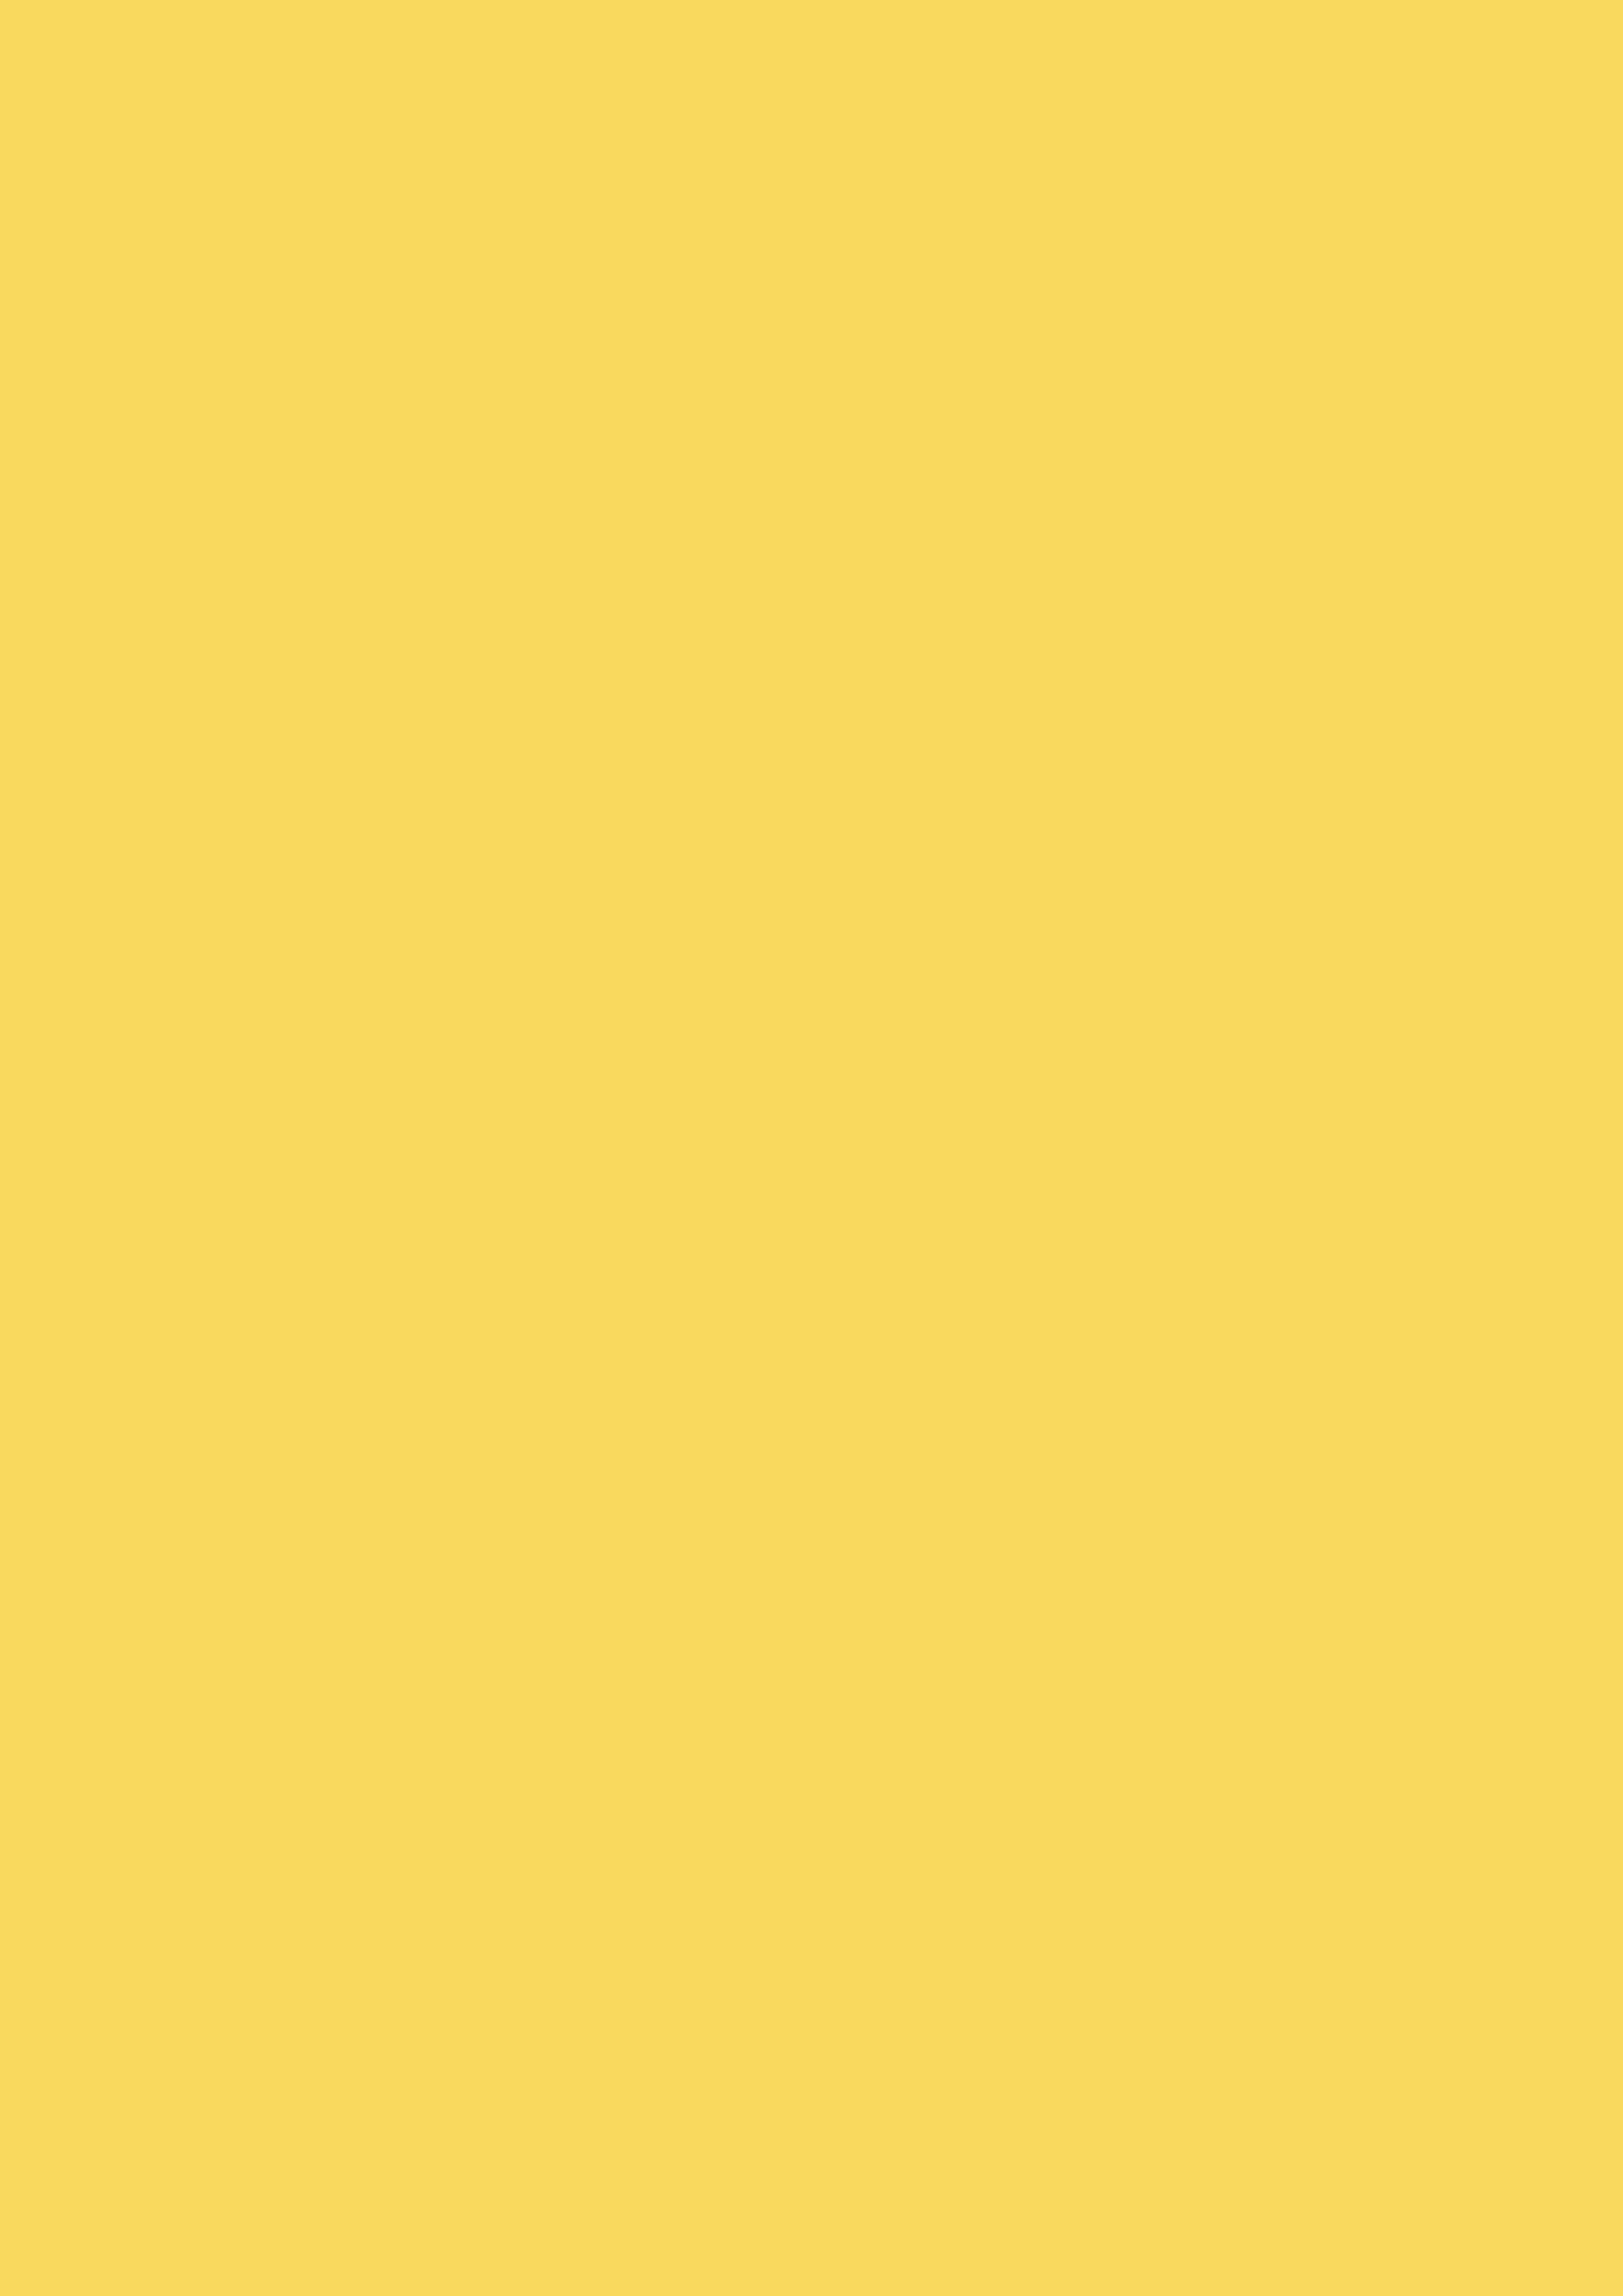 2480x3508 Stil De Grain Yellow Solid Color Background